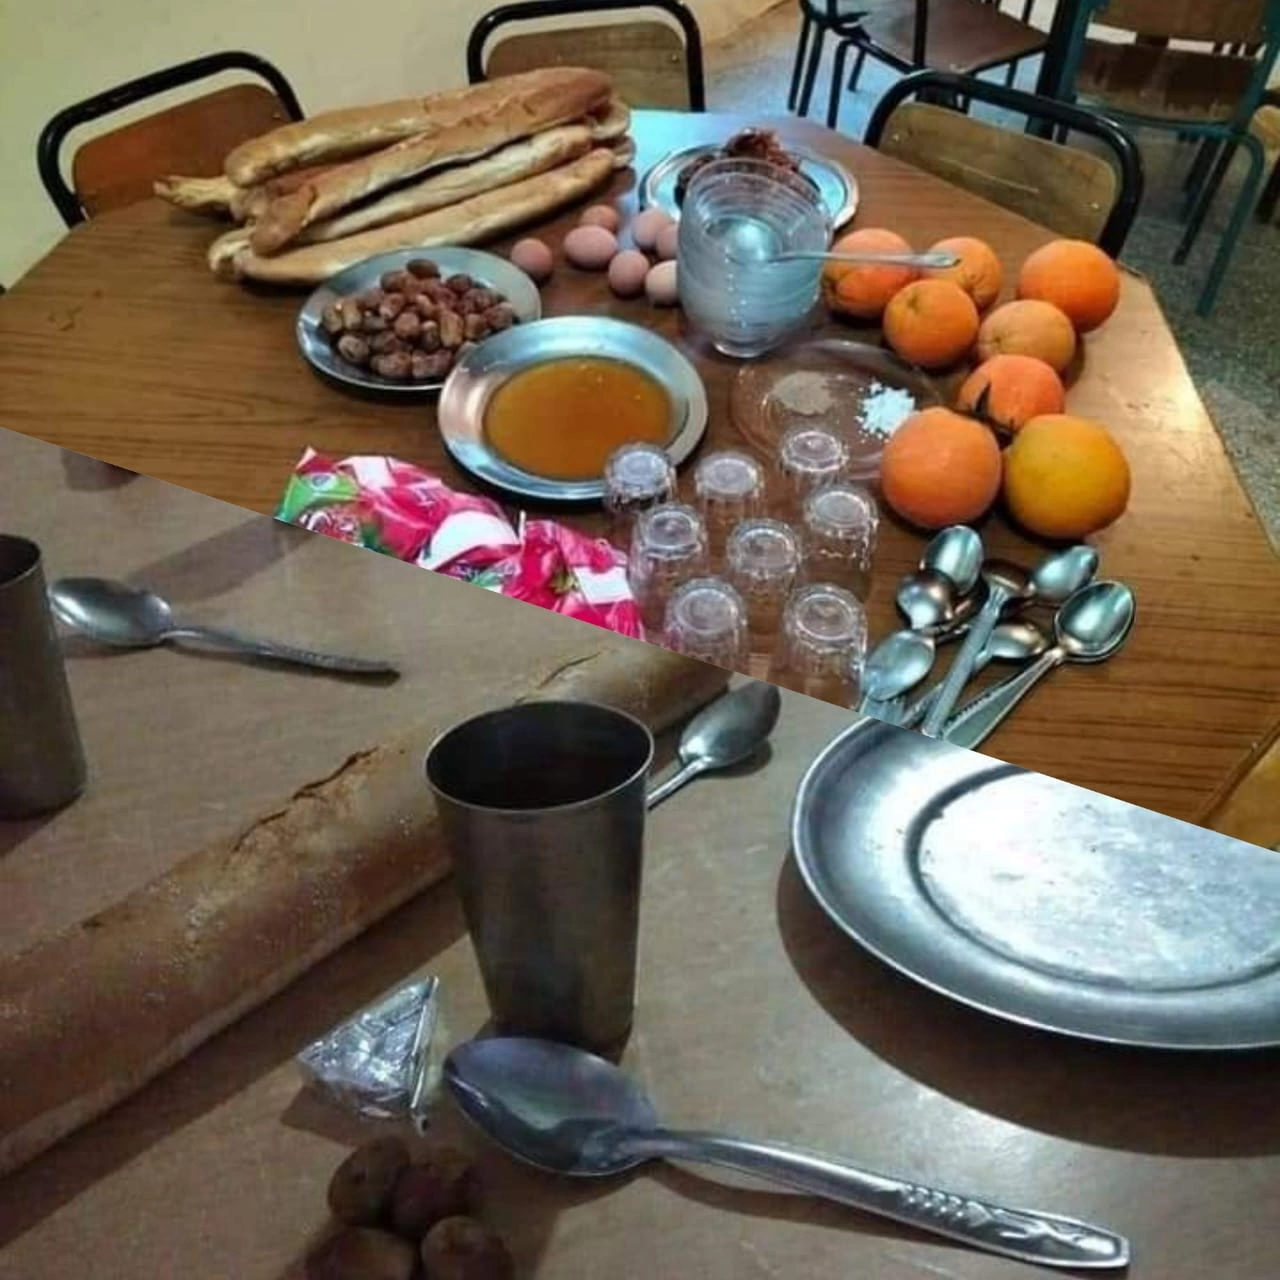 وجبة إفطار تلامذة في تاونات تثير الجدل لكن وزارة التعليم تقول إن “الصور غير حقيقية”